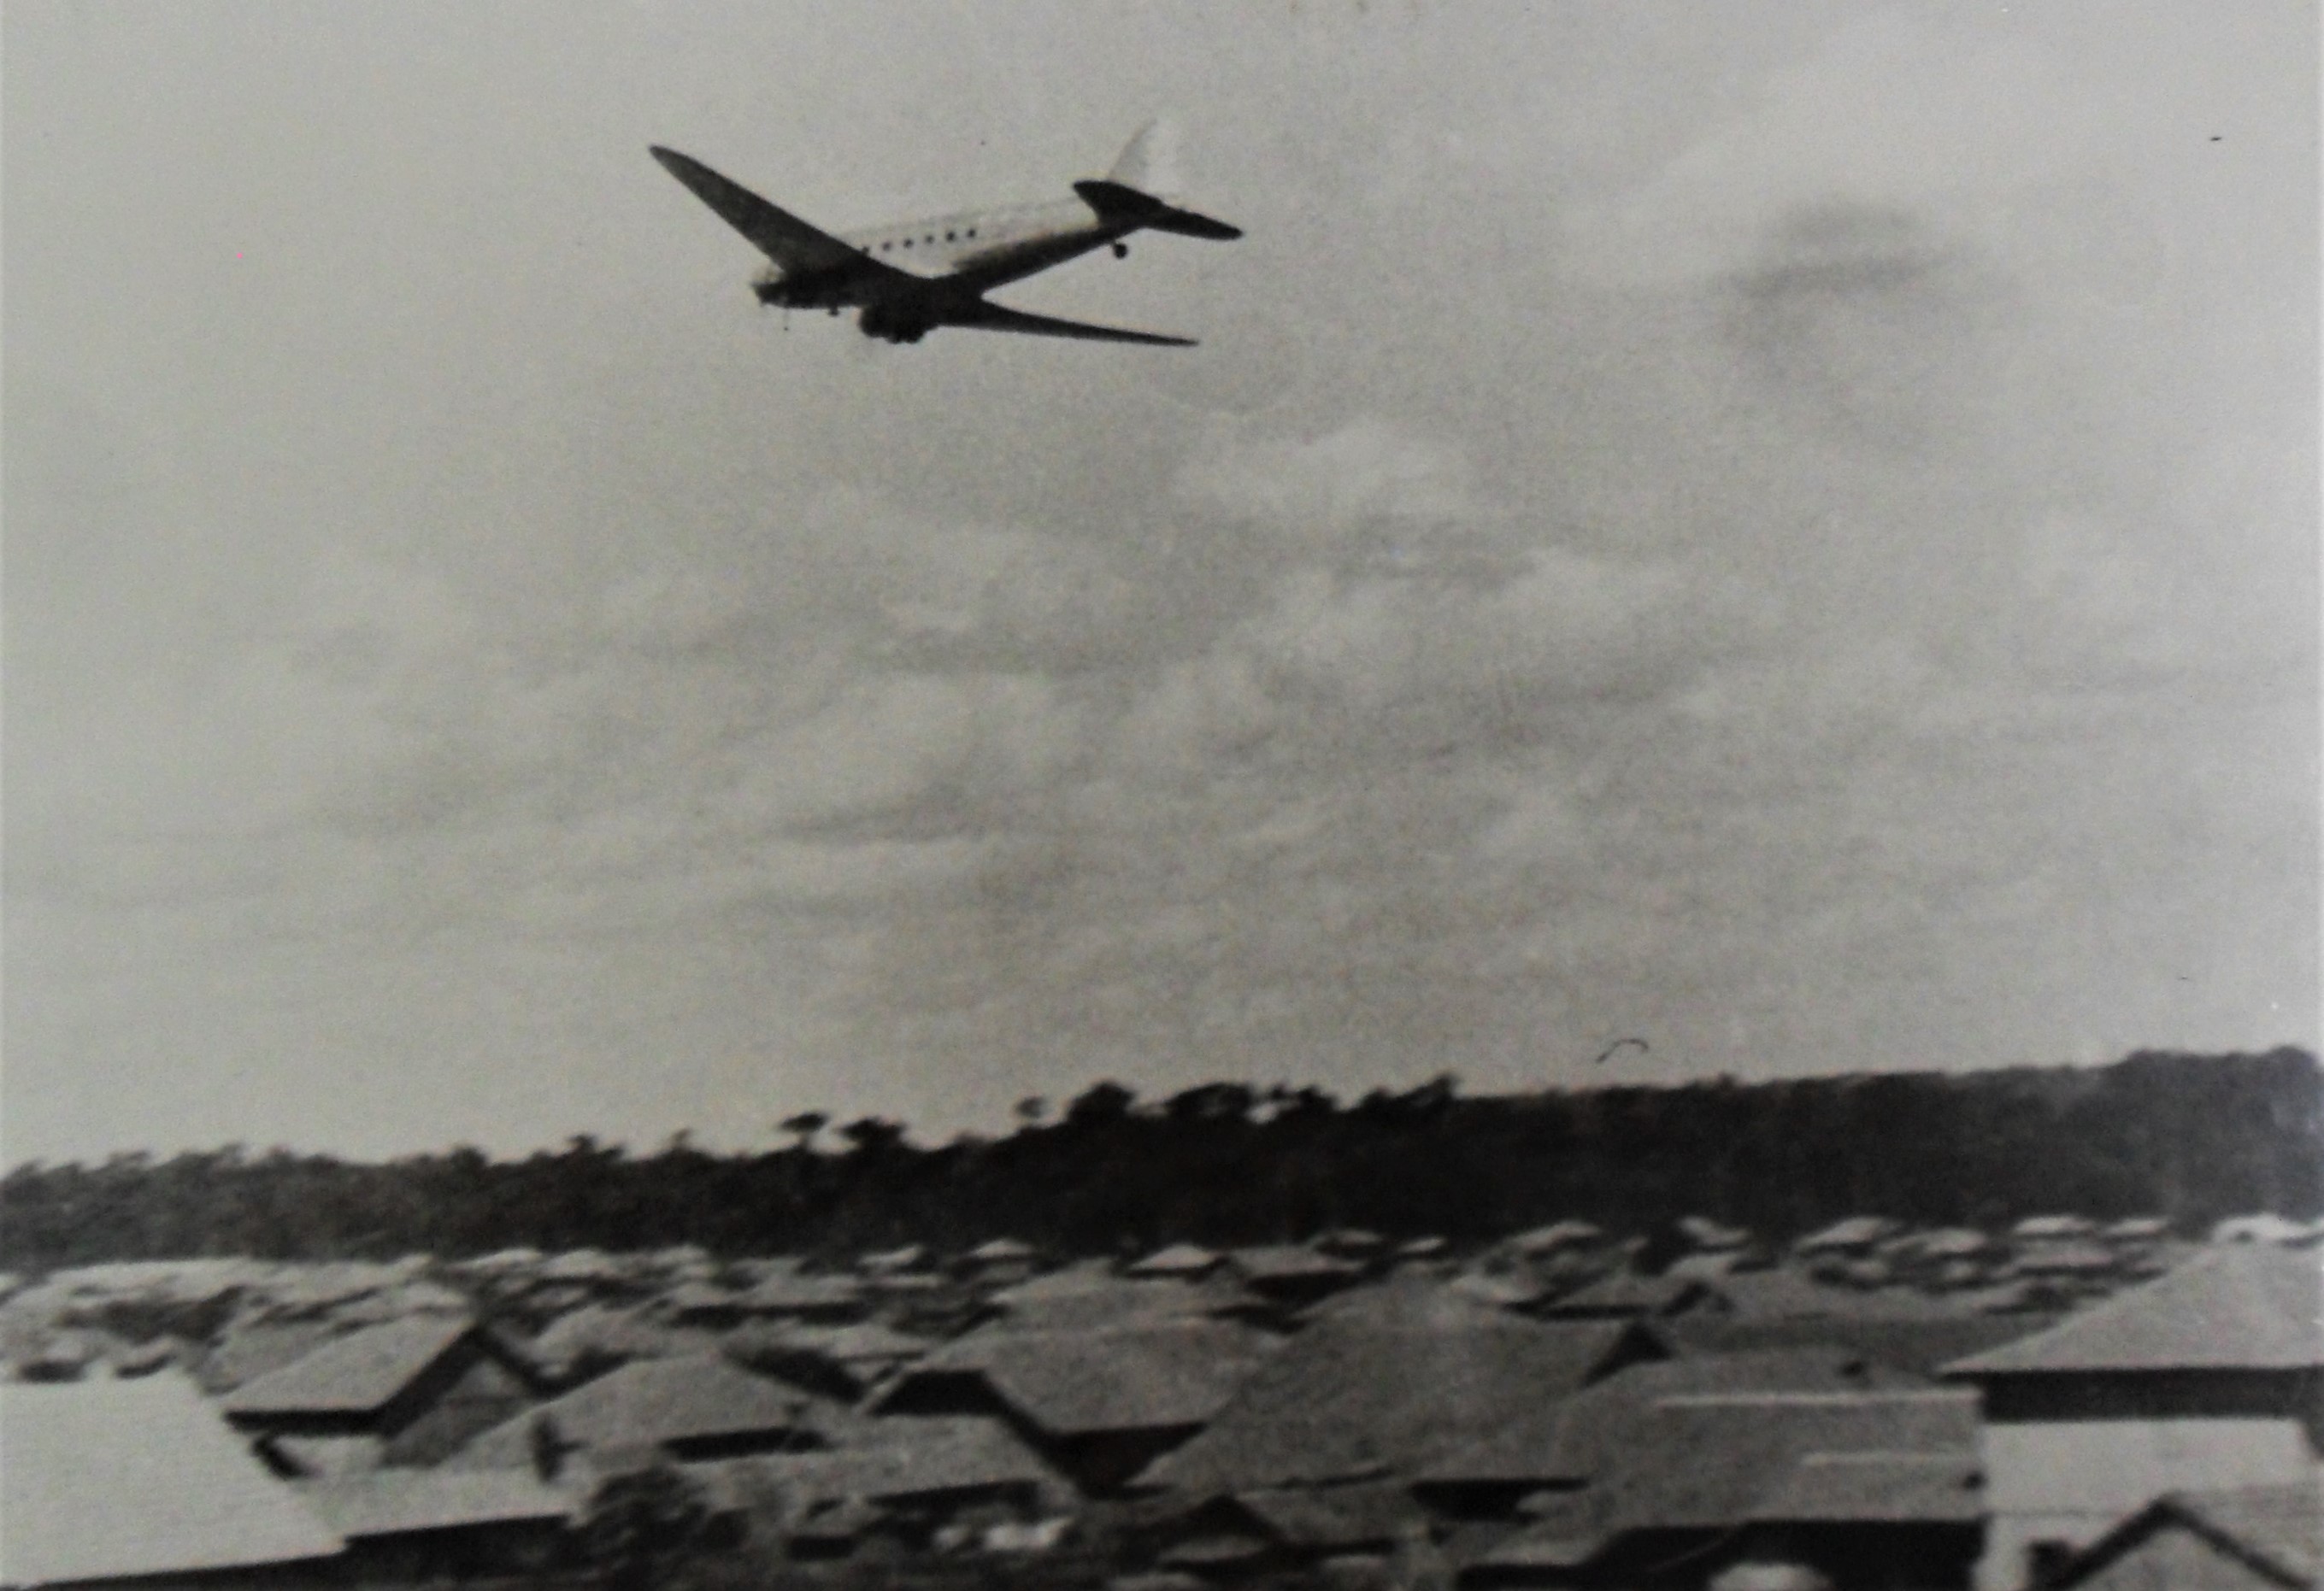 Sobrevoo em Maringá - Década de 1950